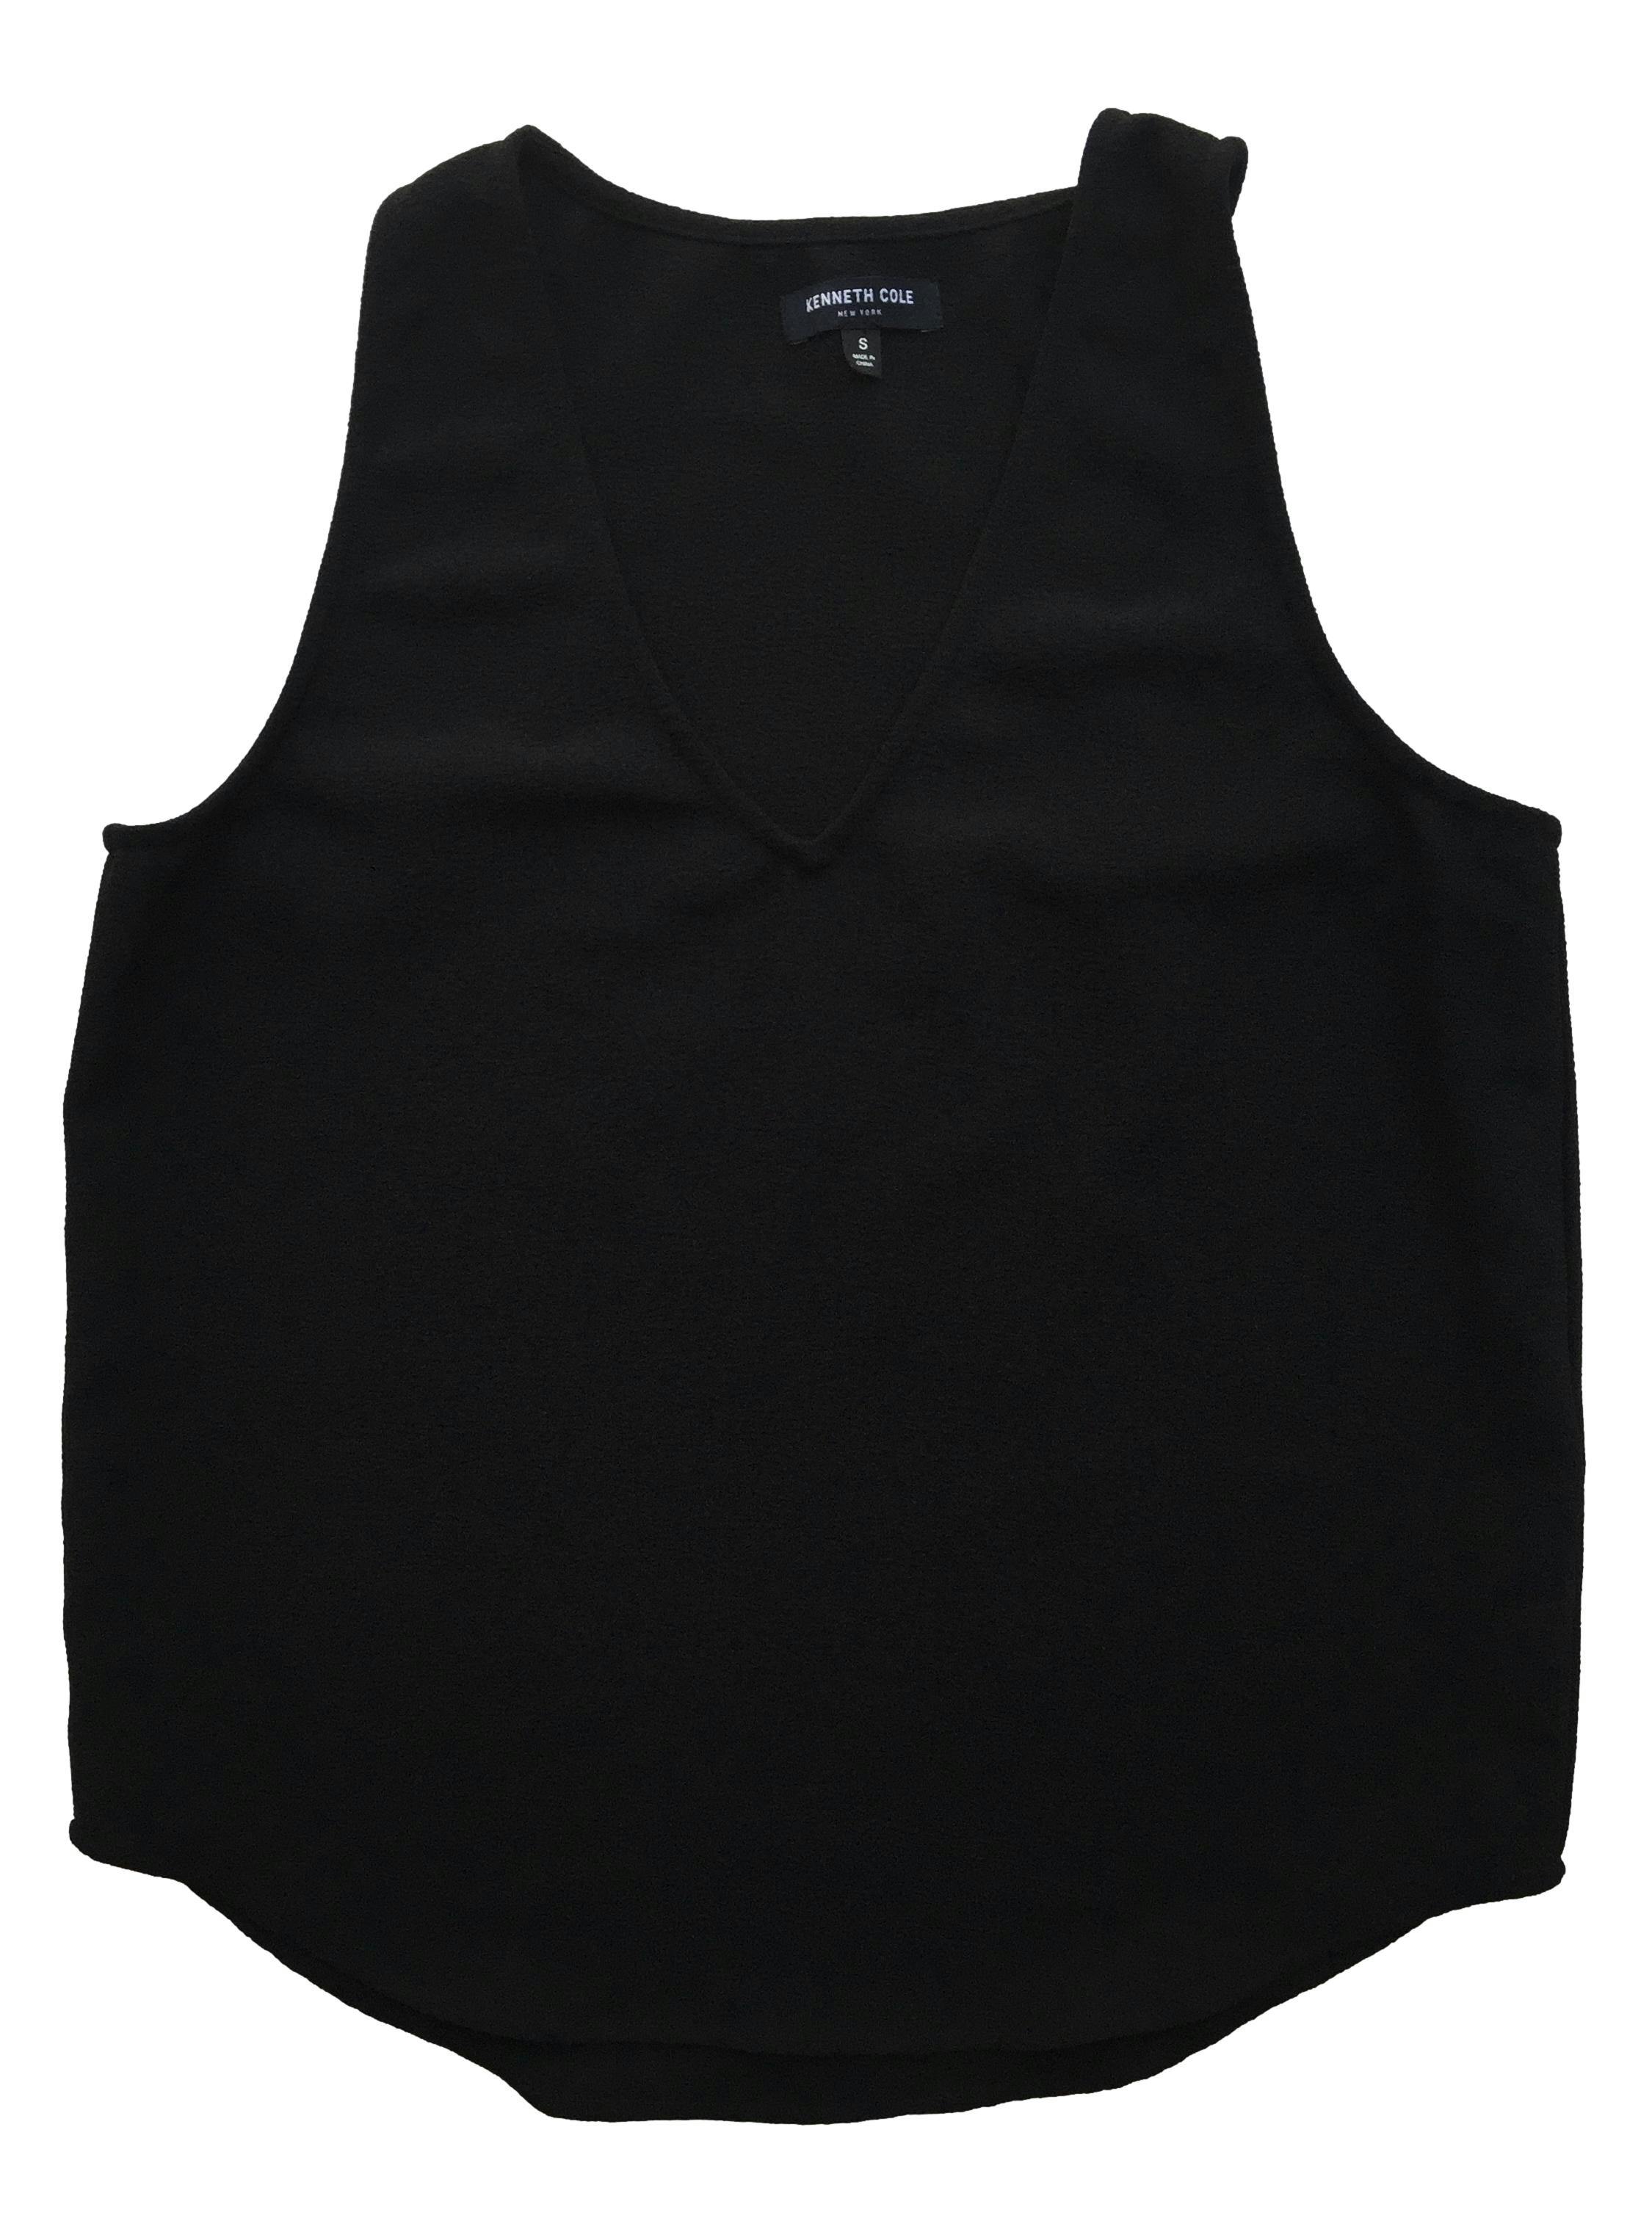 Blusa negra Kenneth Cole con textura, manga cero, cuello V. Busto 94cm, Largo 58cm. 